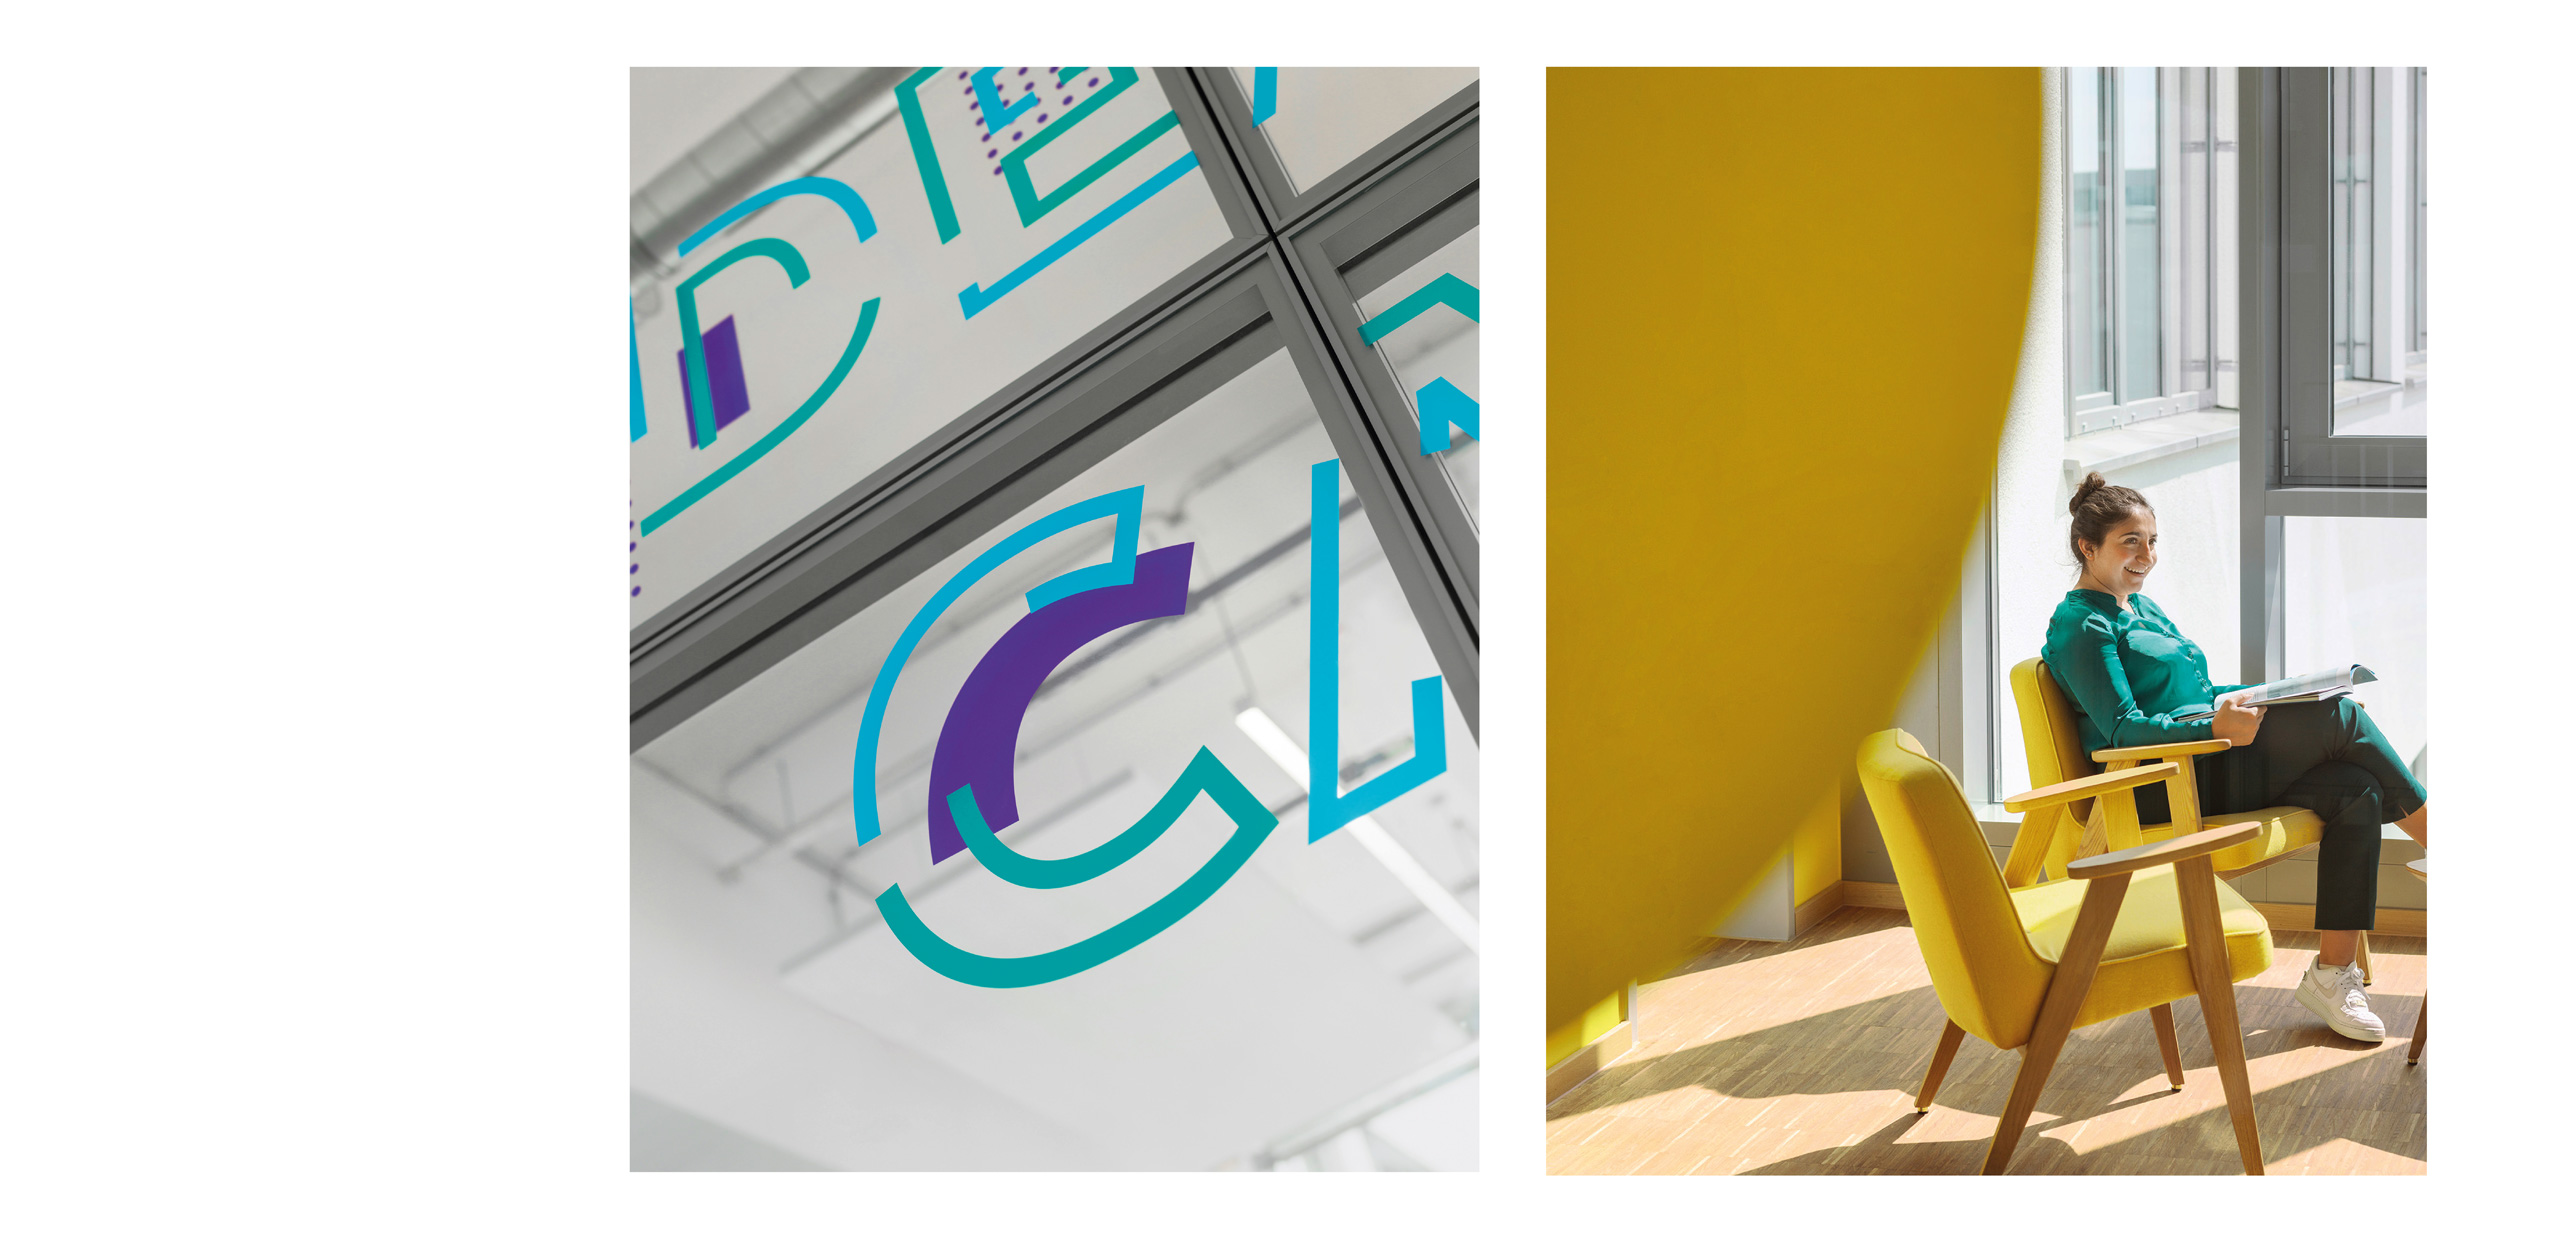 Collage bestehend aus zwei Bildern auf der linken Seite sieht man eine Detailaufnahme von typografischen Elementen in blau, grün und violett auf der rechten Seite sieht man eine Frau vor einer gelben Wand